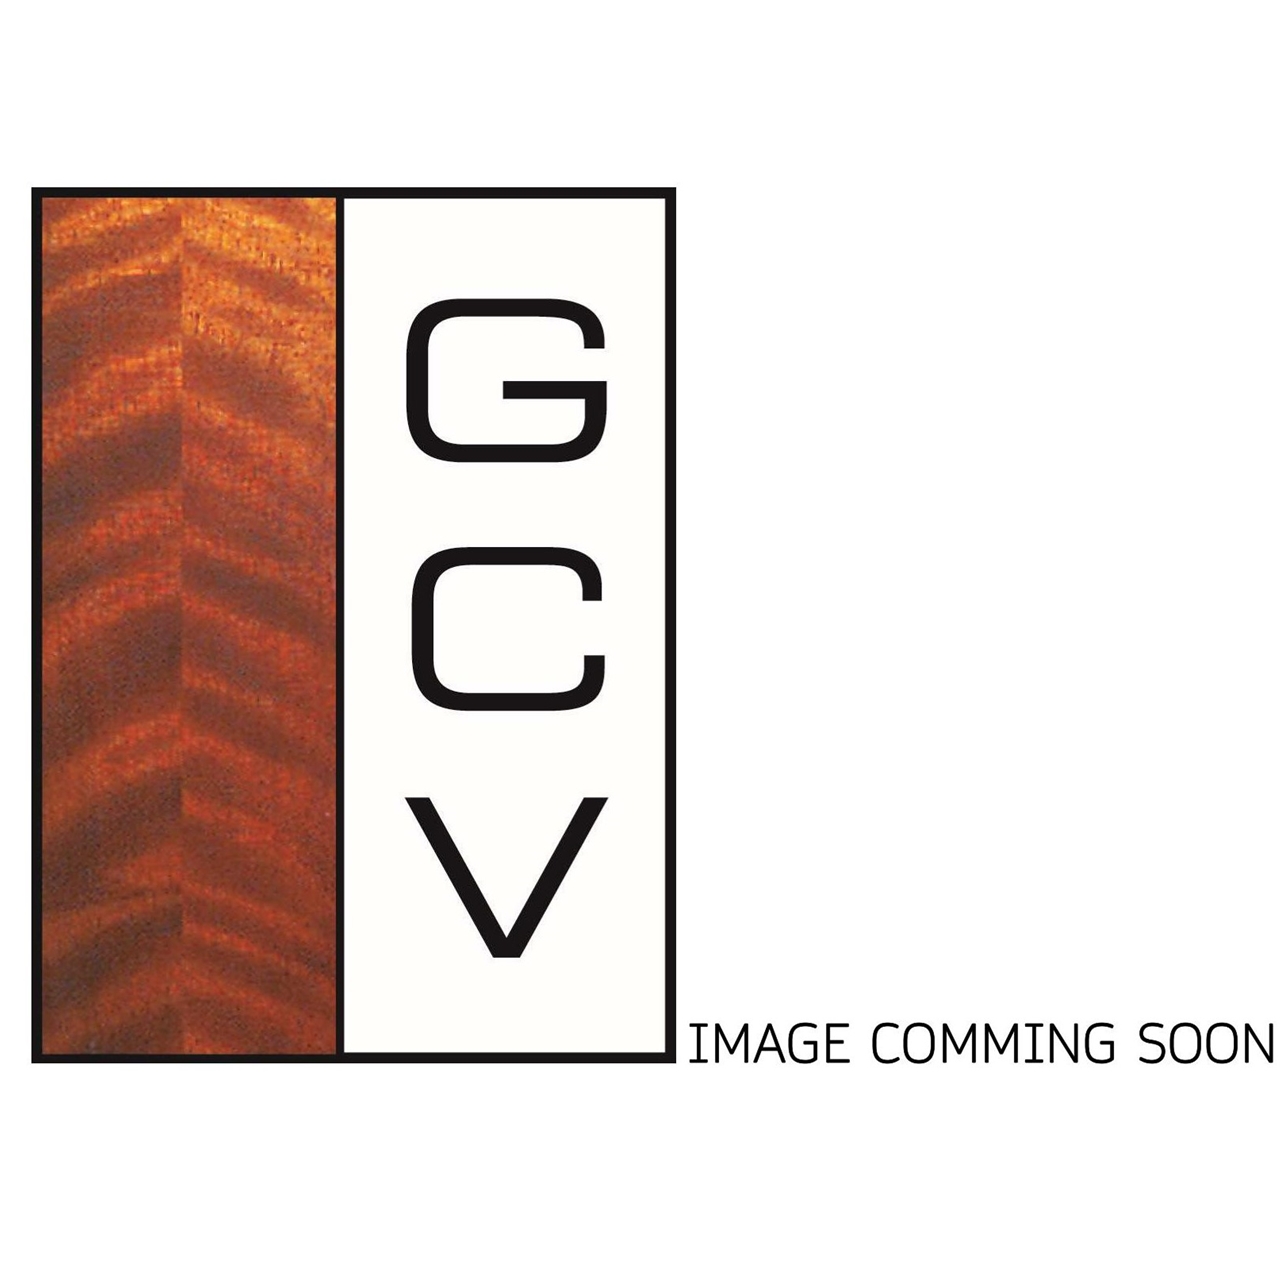 GCV Gurte zu GCV Violin Koffer/Etui 1/4